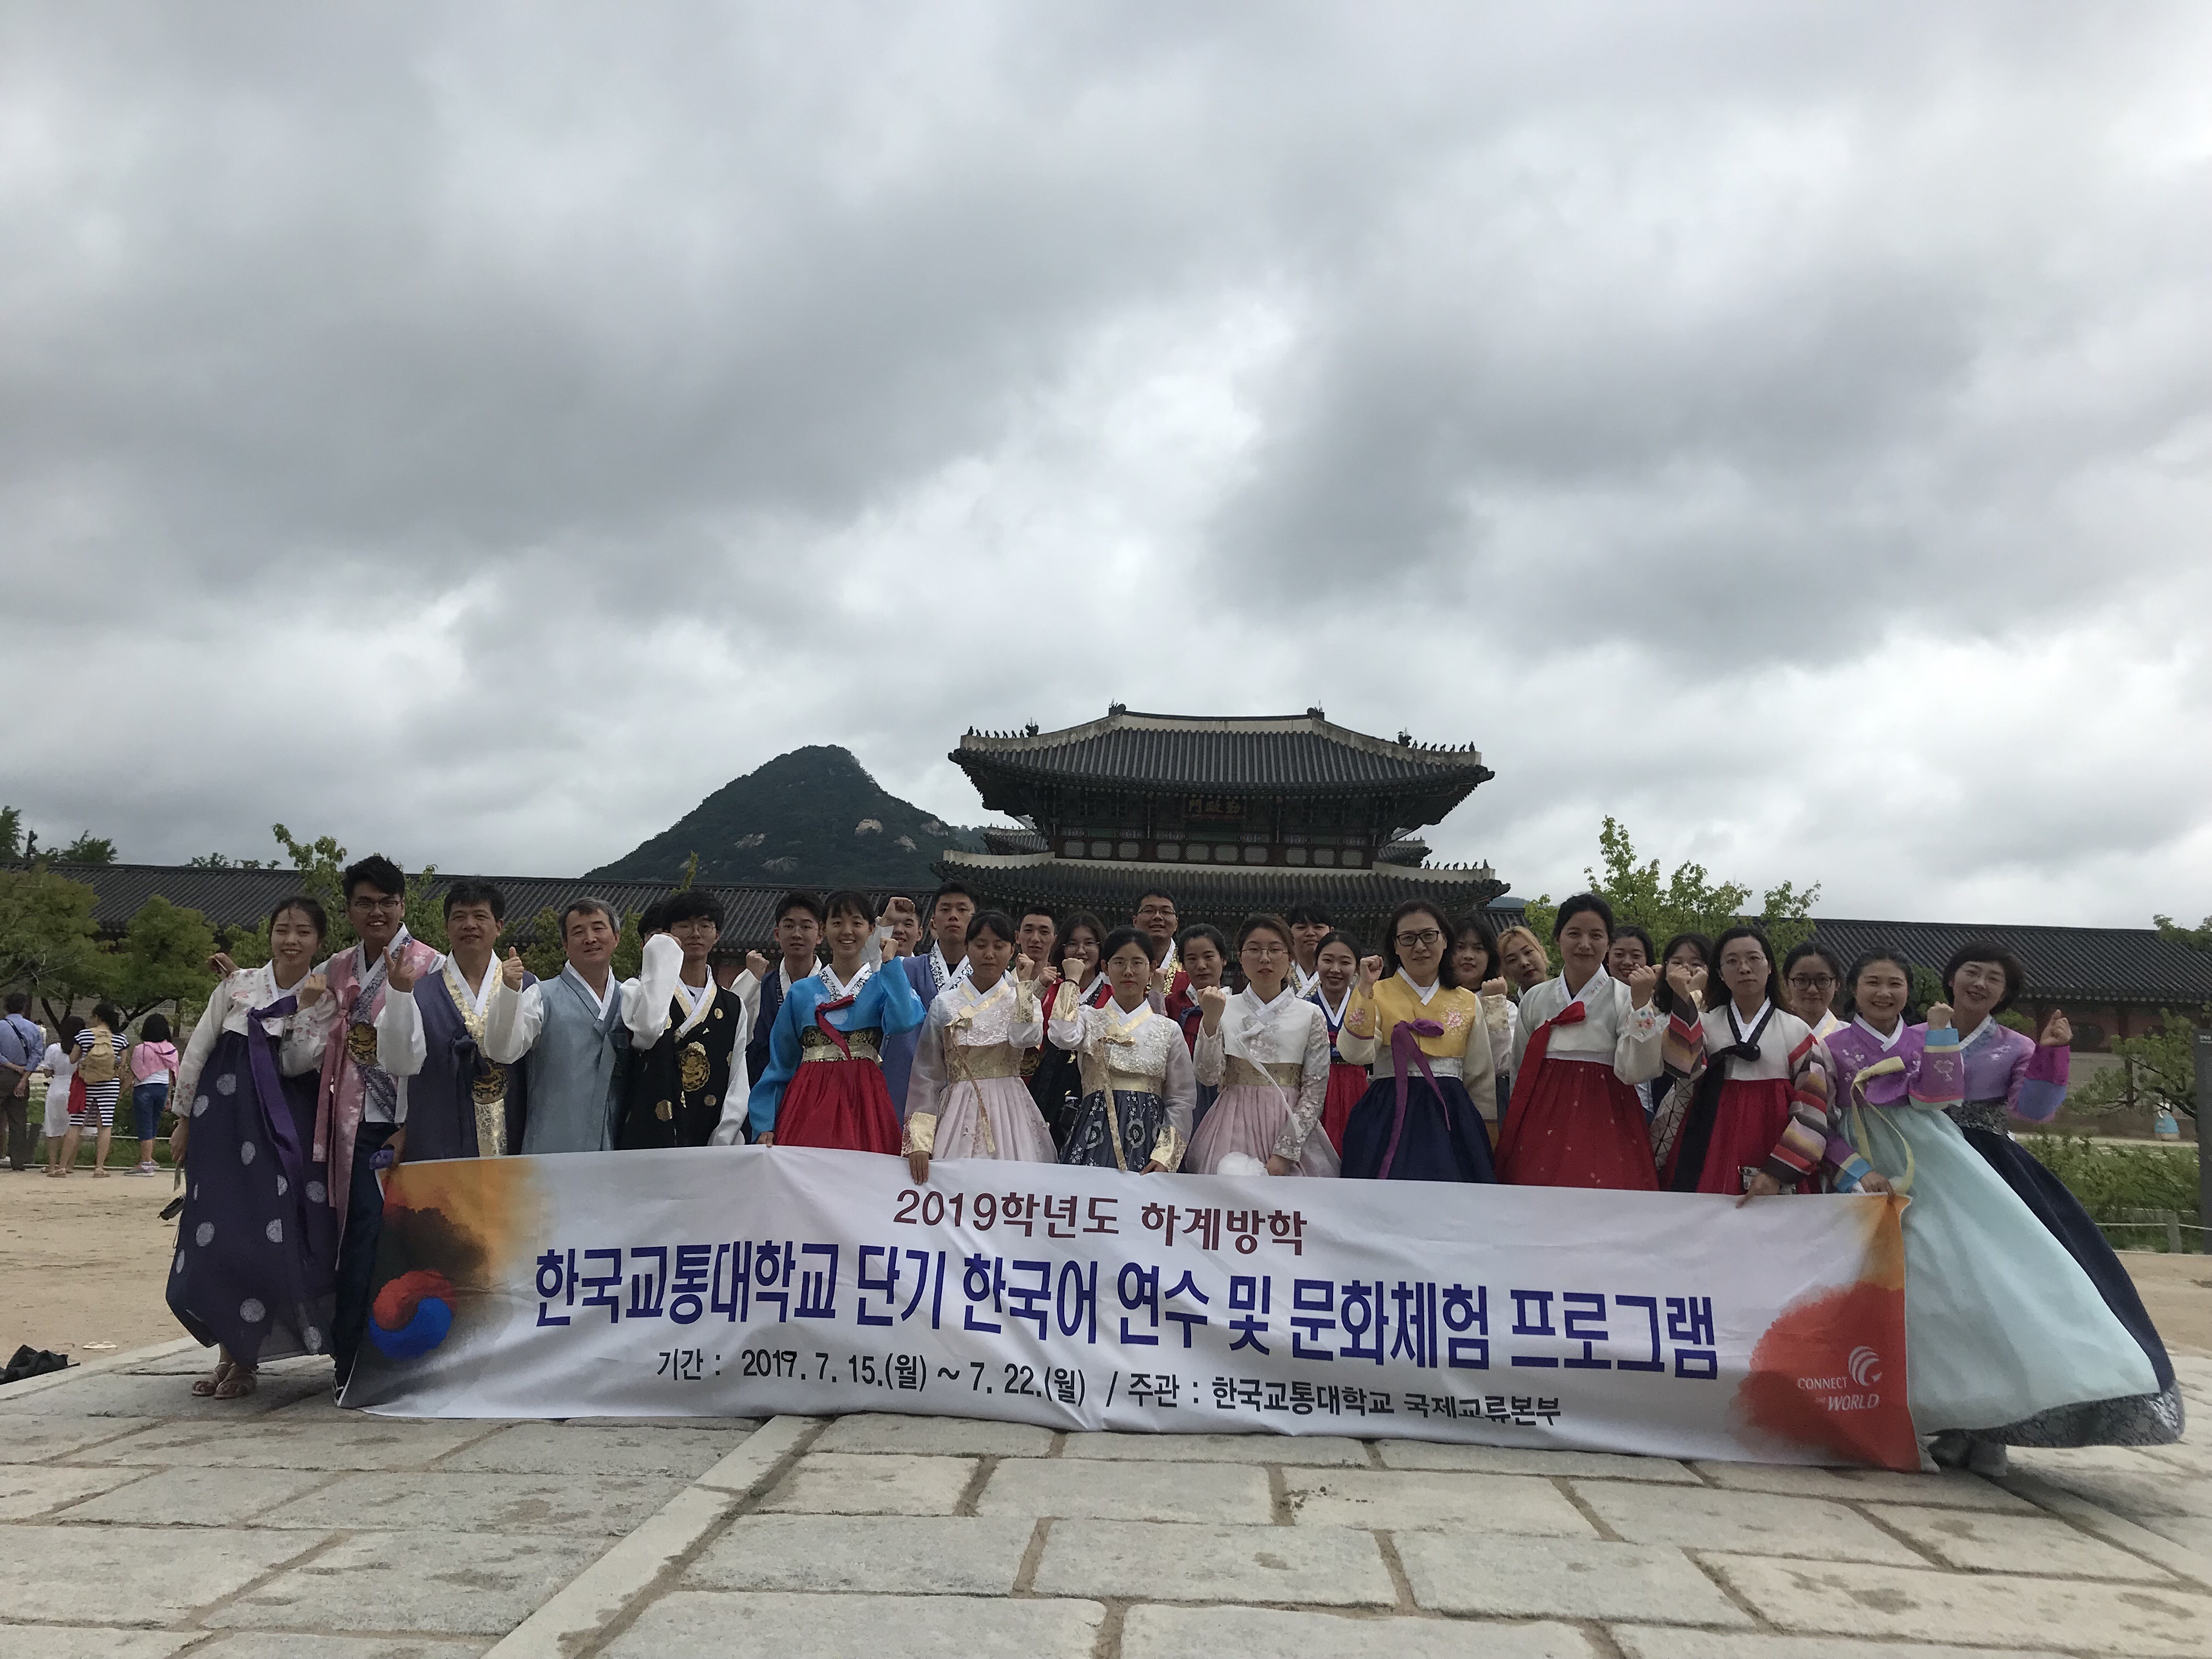 2019학년도 하계방학 단기 한국어연수 및 문화체험 프로그램